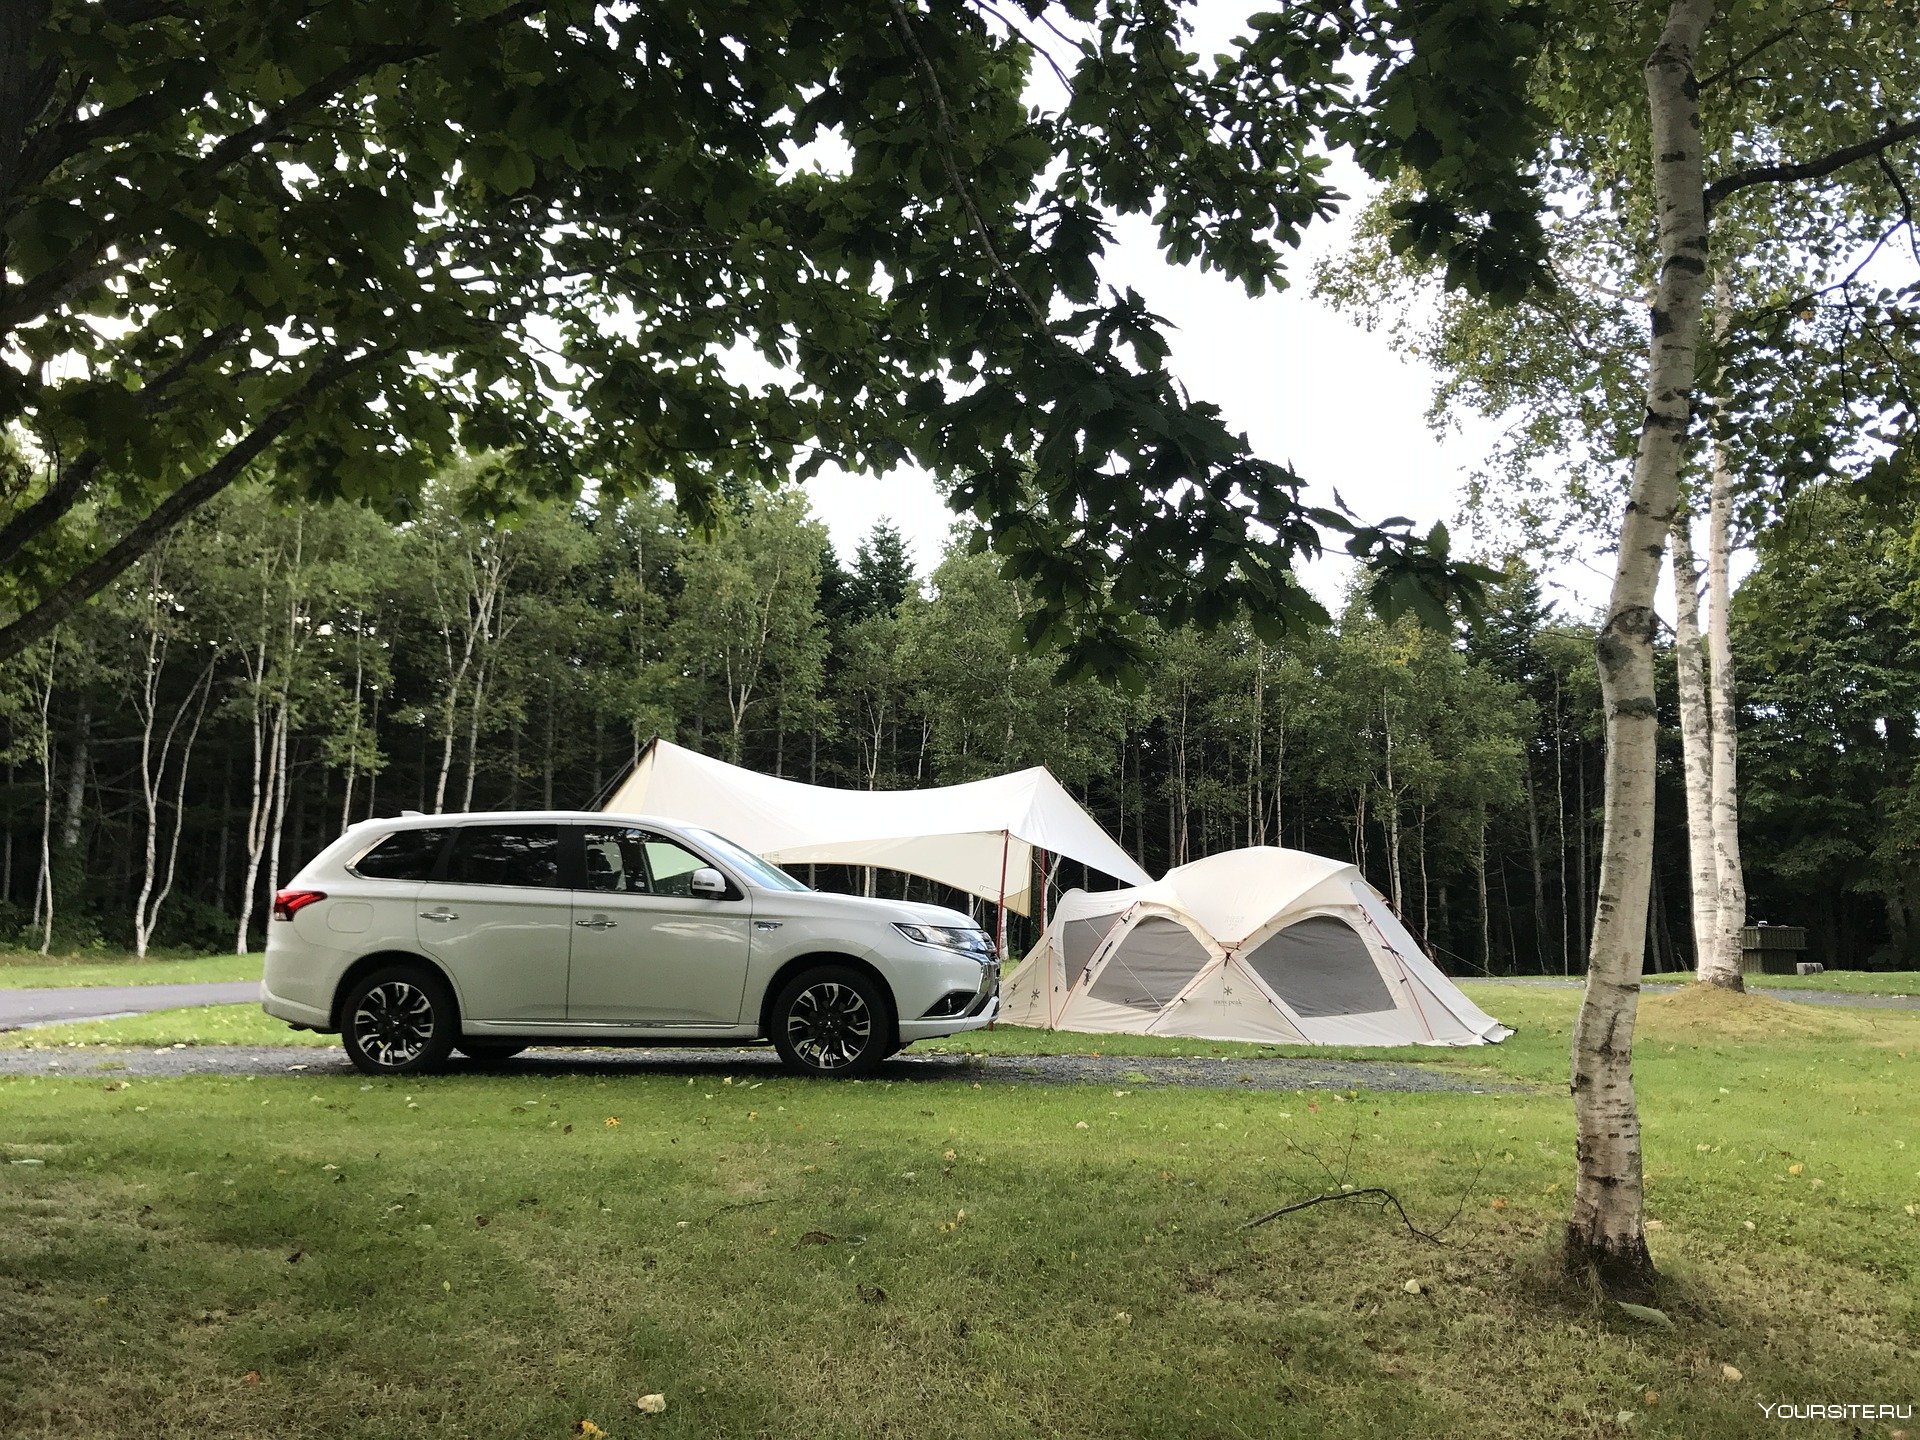 Топ кемпинг. Палатки для кемпинга. Кемпинг стоянка. Палатки для кемпинга на автомобиле машине. Автомобиль кемпинг палатка на природе.